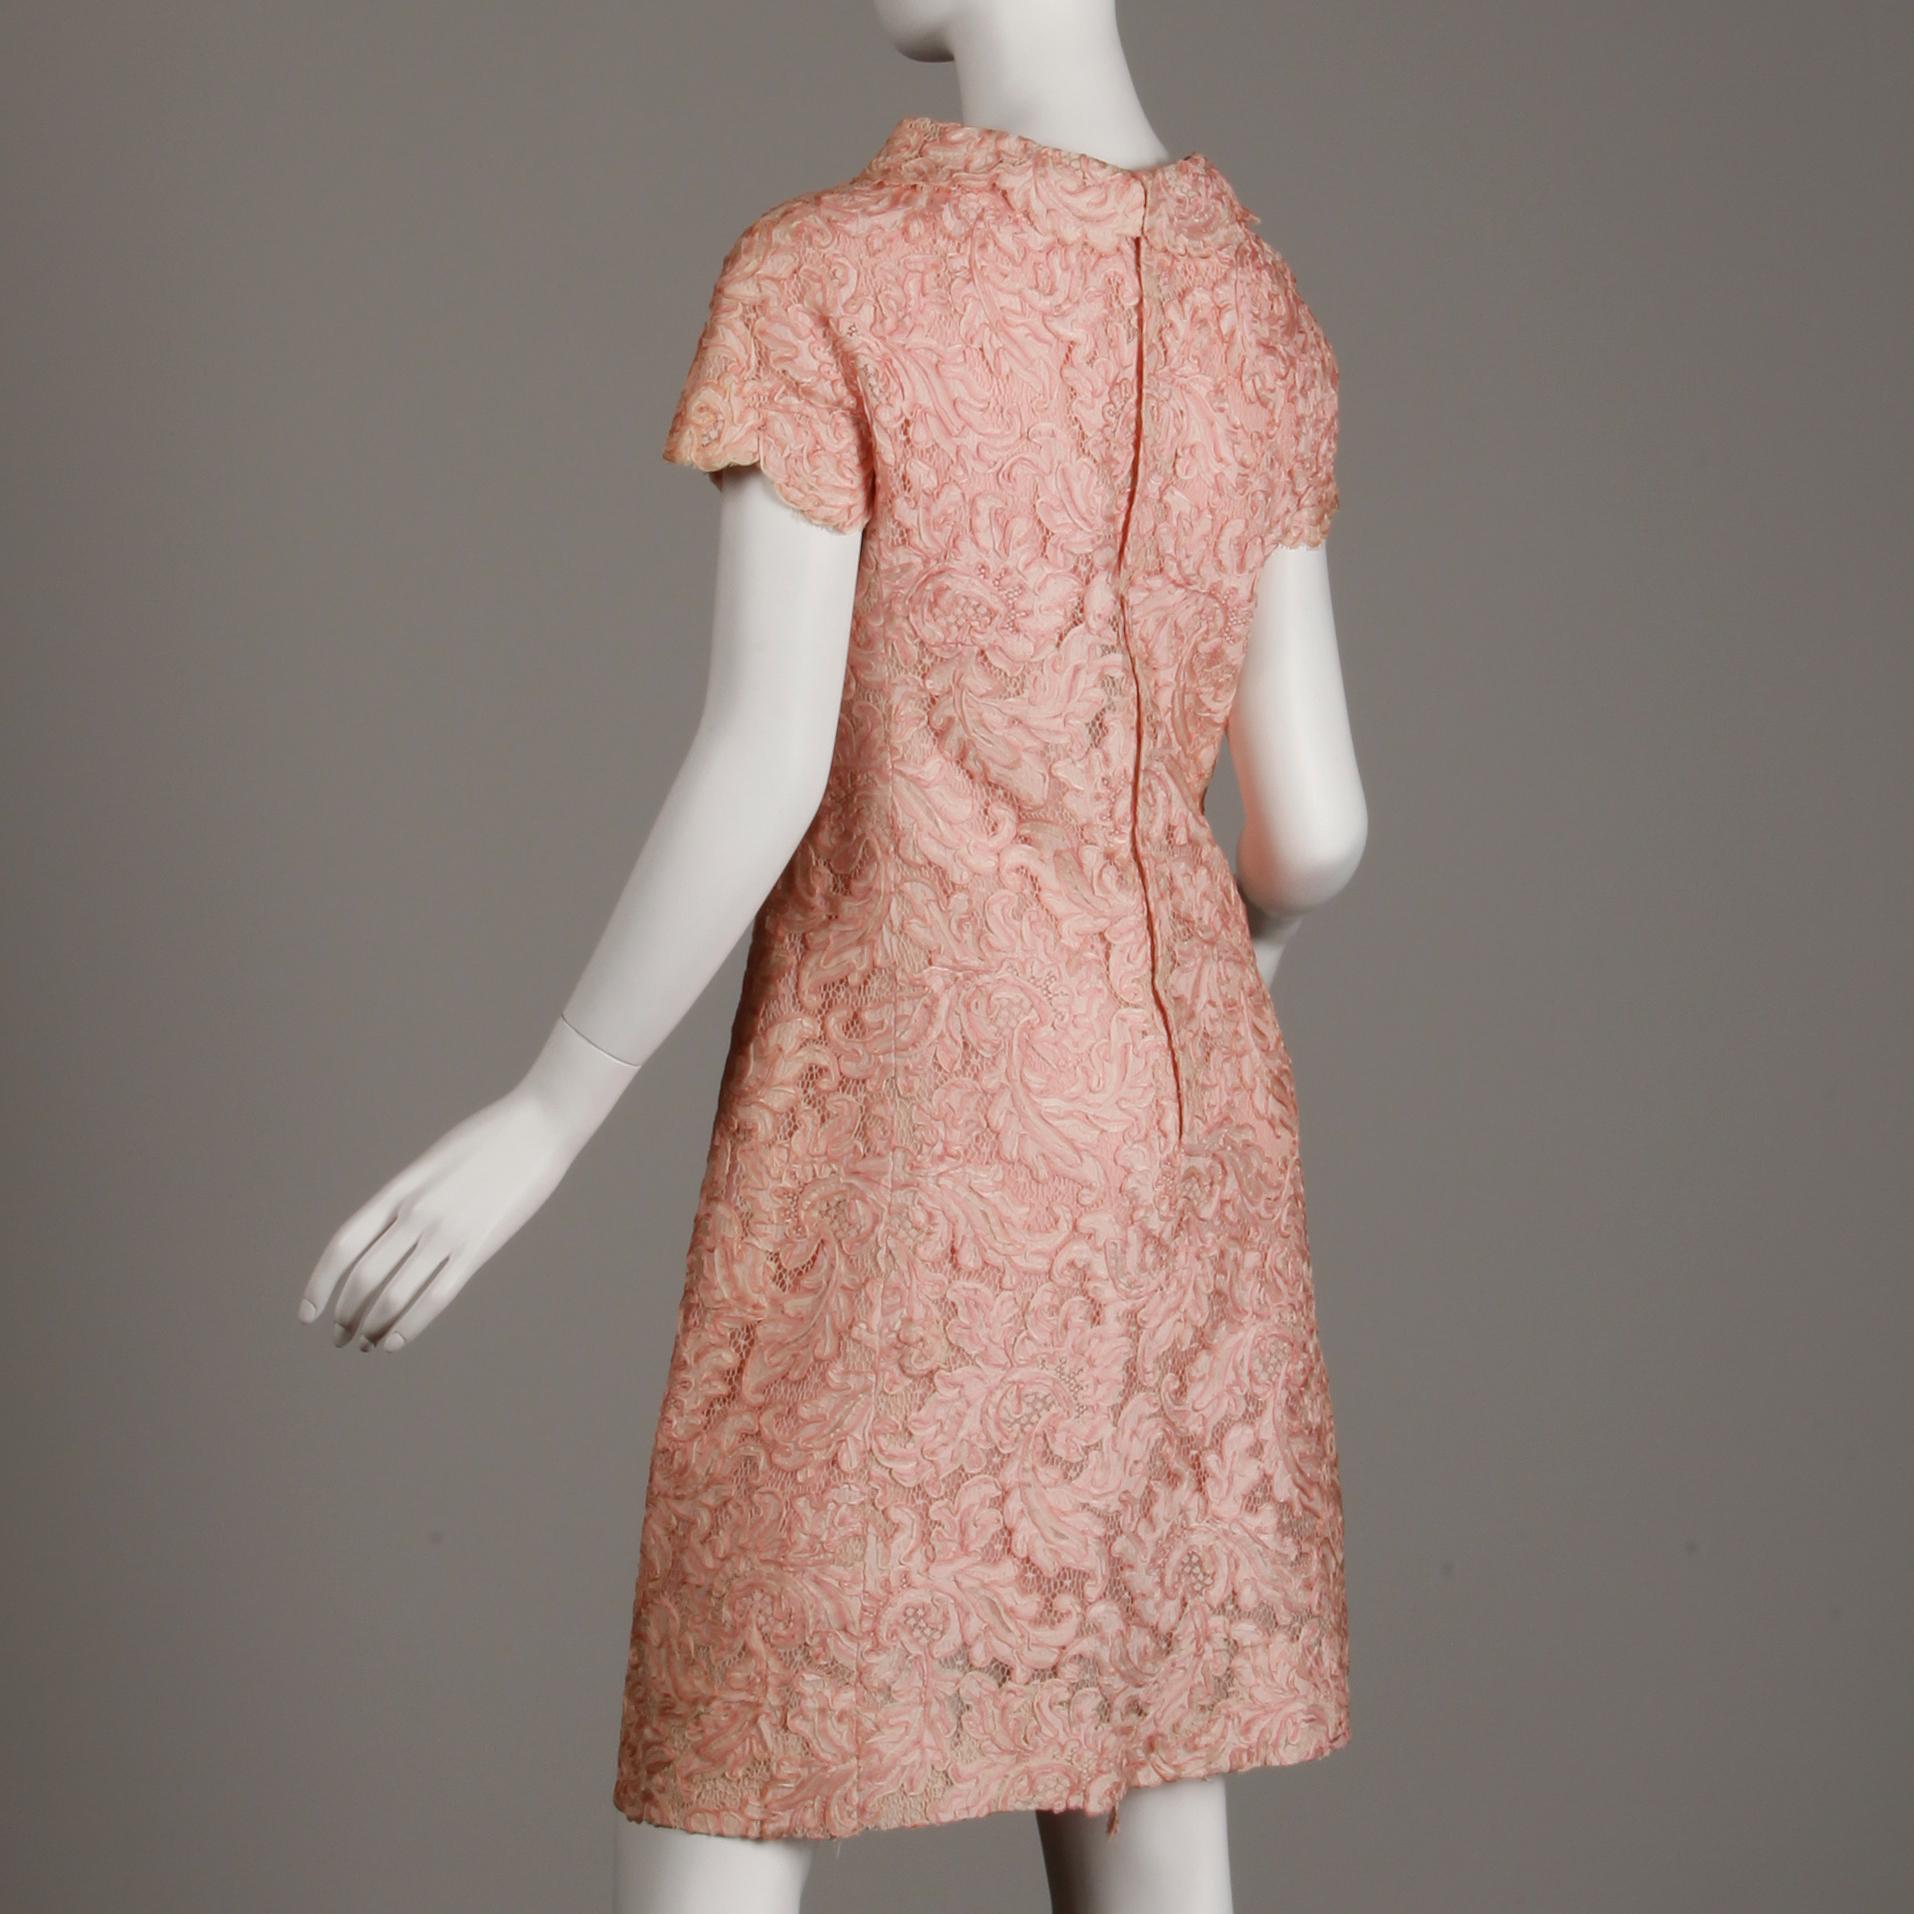 1960s Mollie Parnis Vintage Pink Soutache + Scalloped Lace Shift Dress Dress For Sale 2